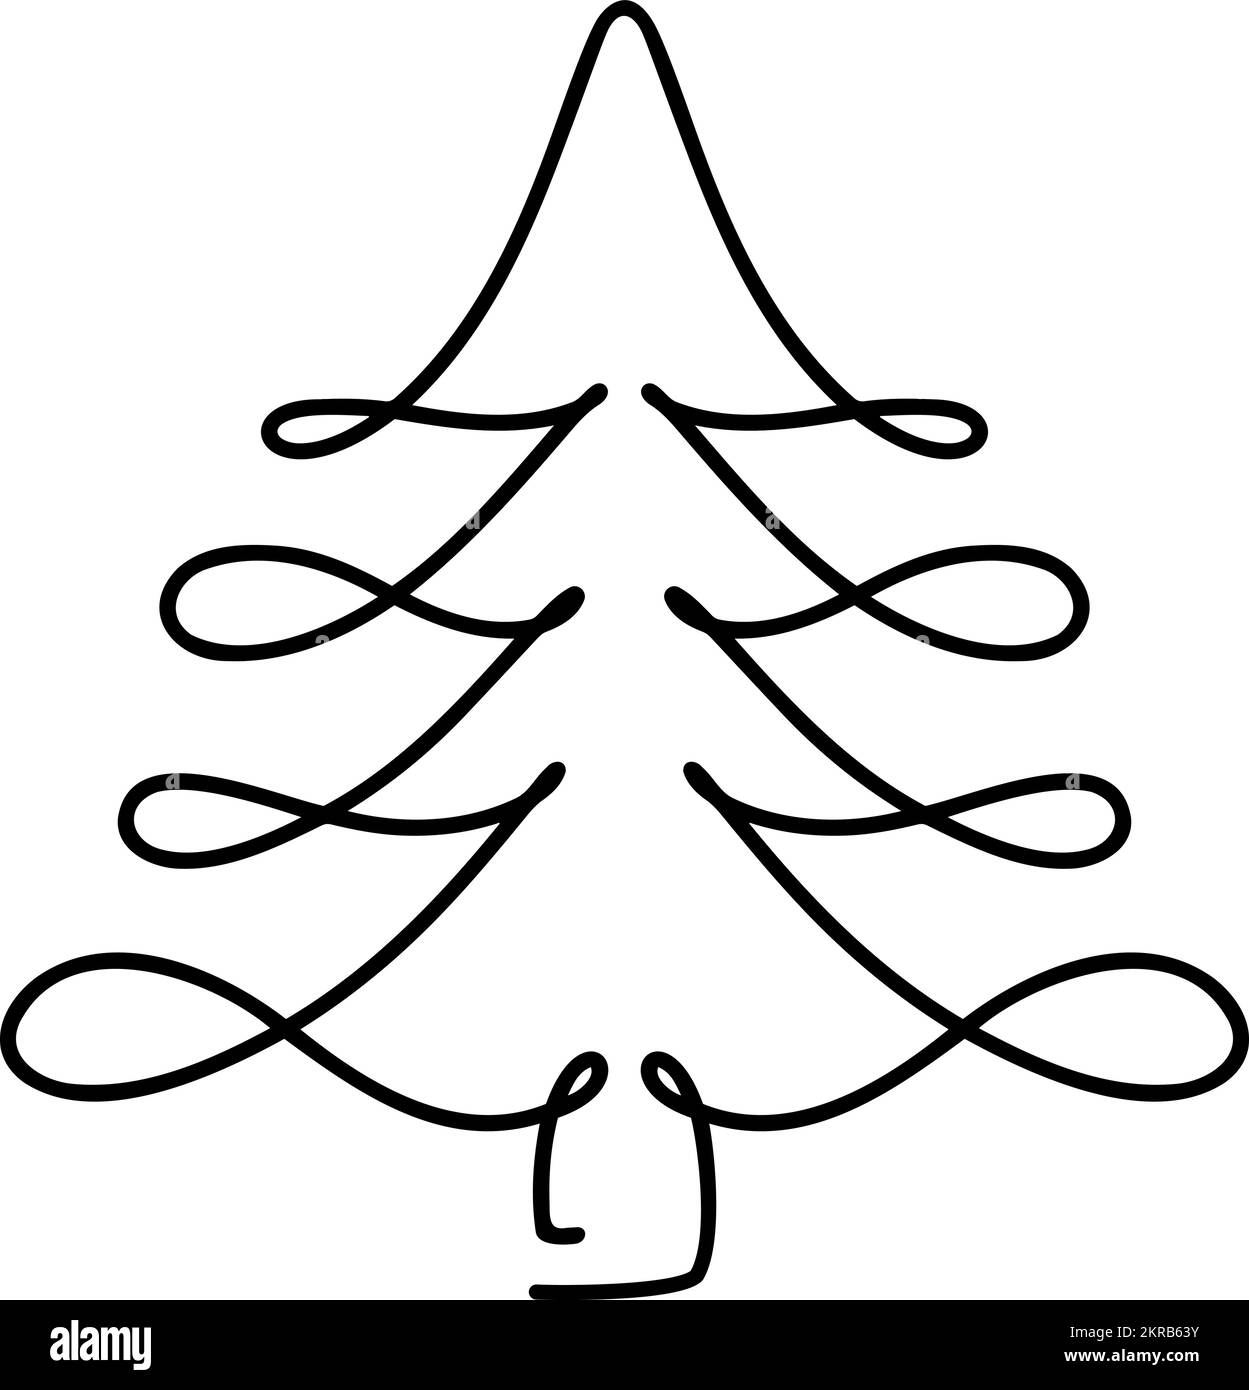 Vector abeto de Navidad monolina art. Dibujo continuo de una línea de pino. Ilustración Diseño minimalista para el concepto tipo Navidad y Año Nuevo Ilustración del Vector